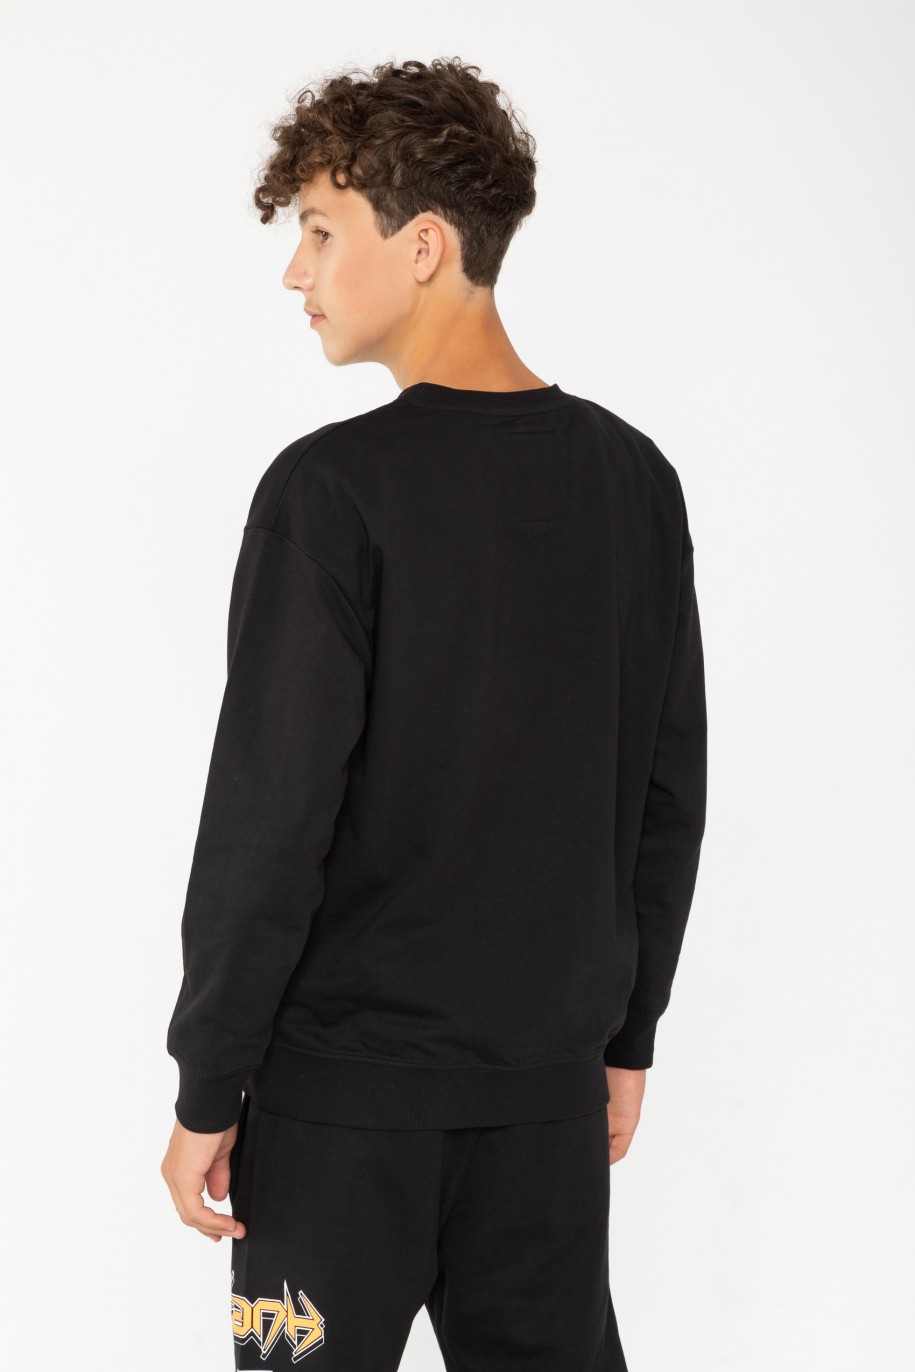 Czarna bluza dresowa z nadrukami - 44700